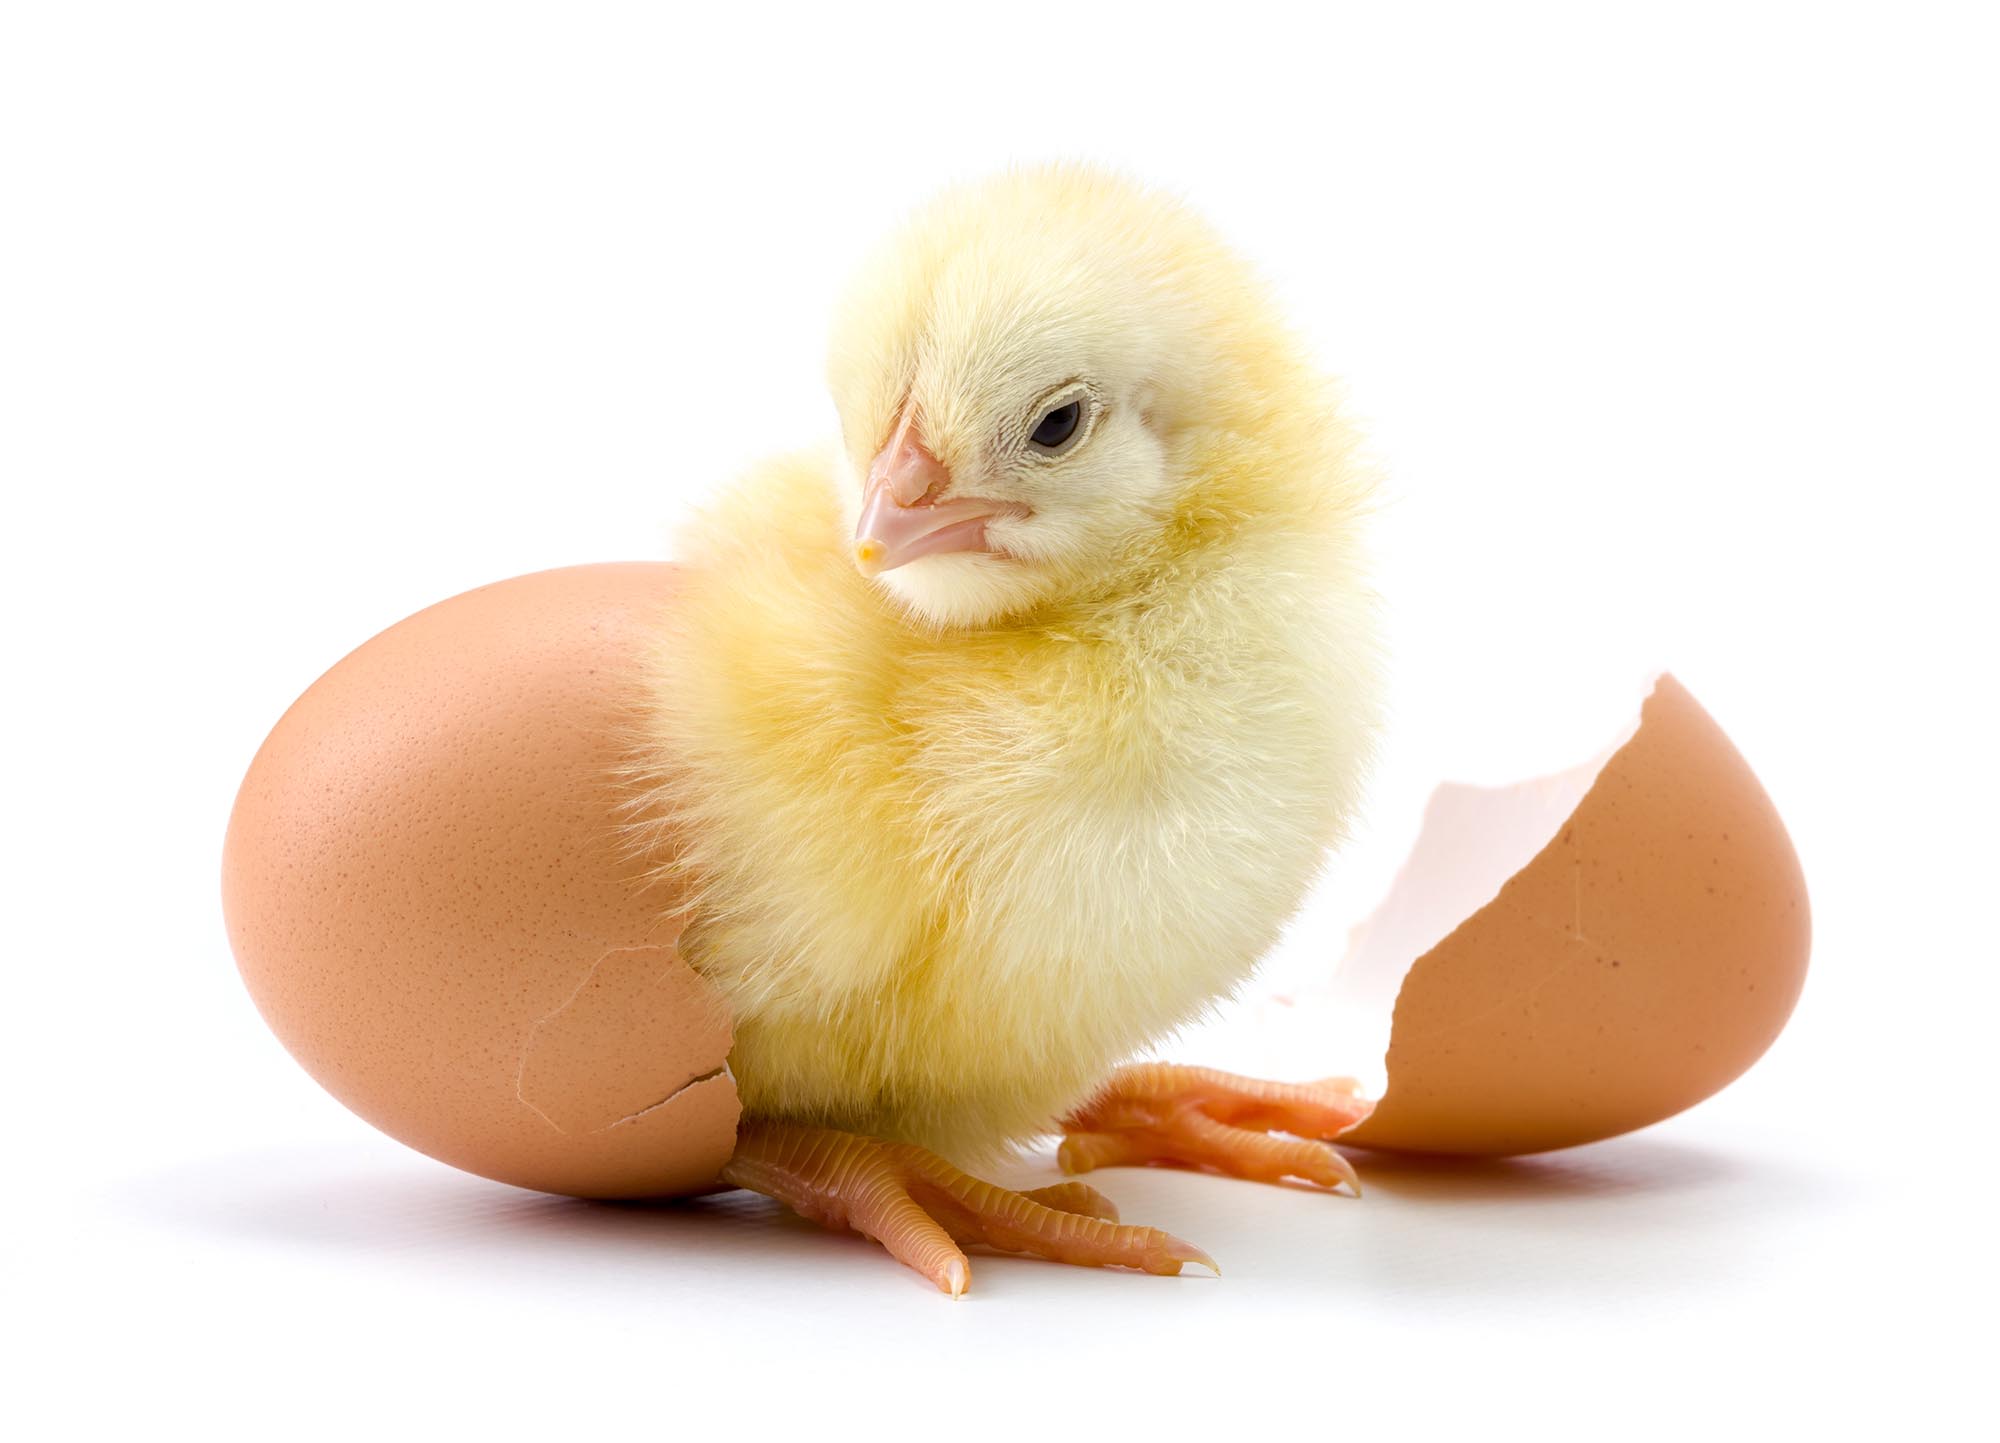 Фотографию цыплят желтеньких вылупившихся из яичек